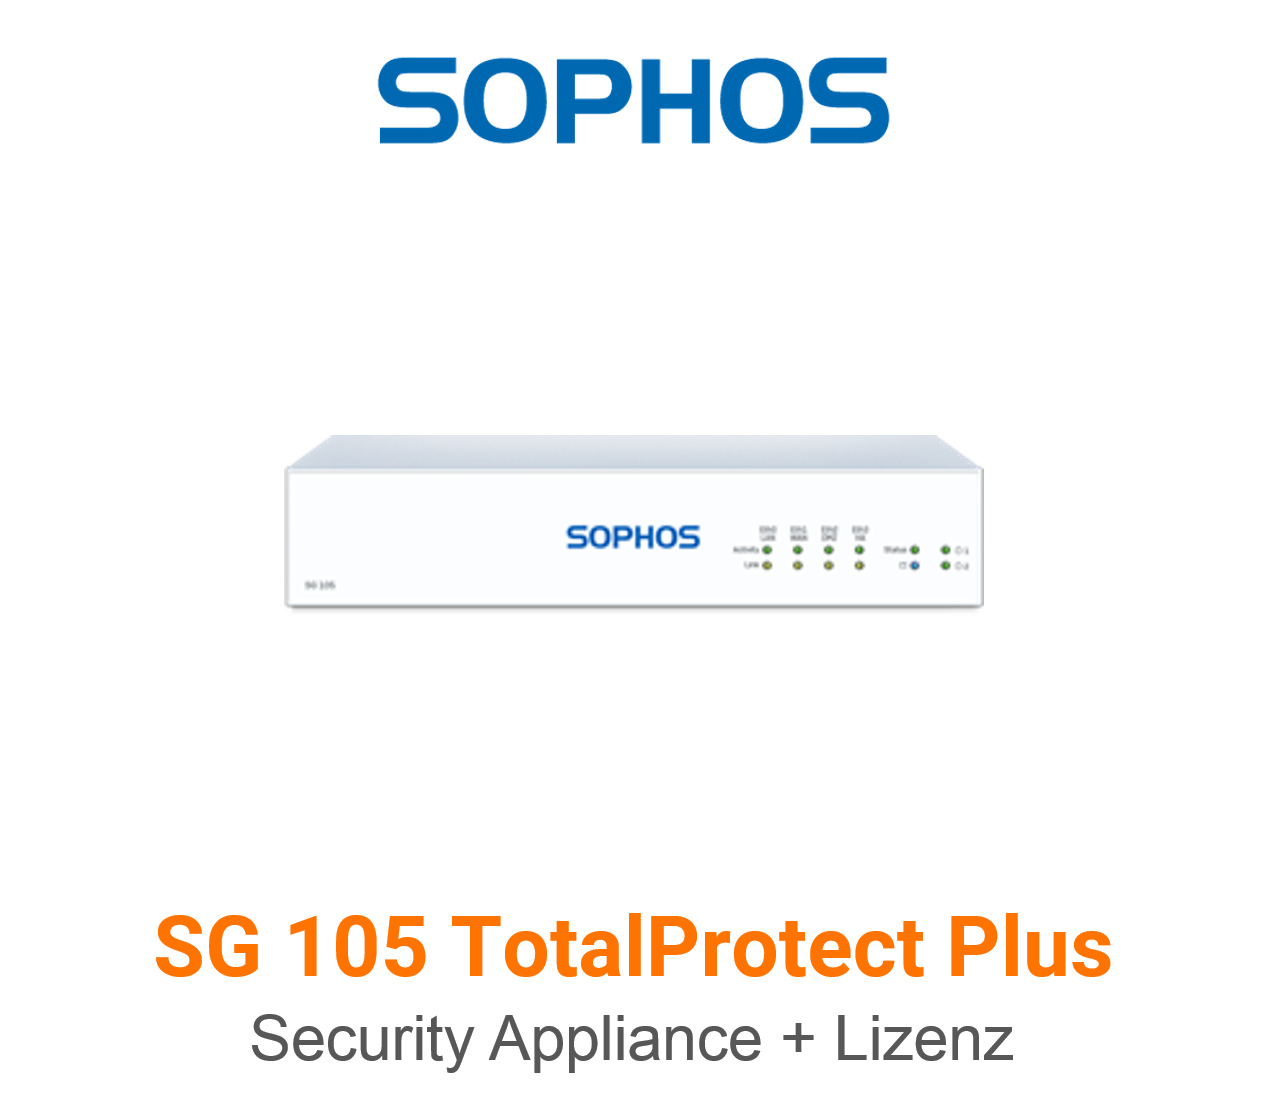 Sophos SG 105 TotalProtect Plus Security Appliance + Lizenz Vorschaubild 